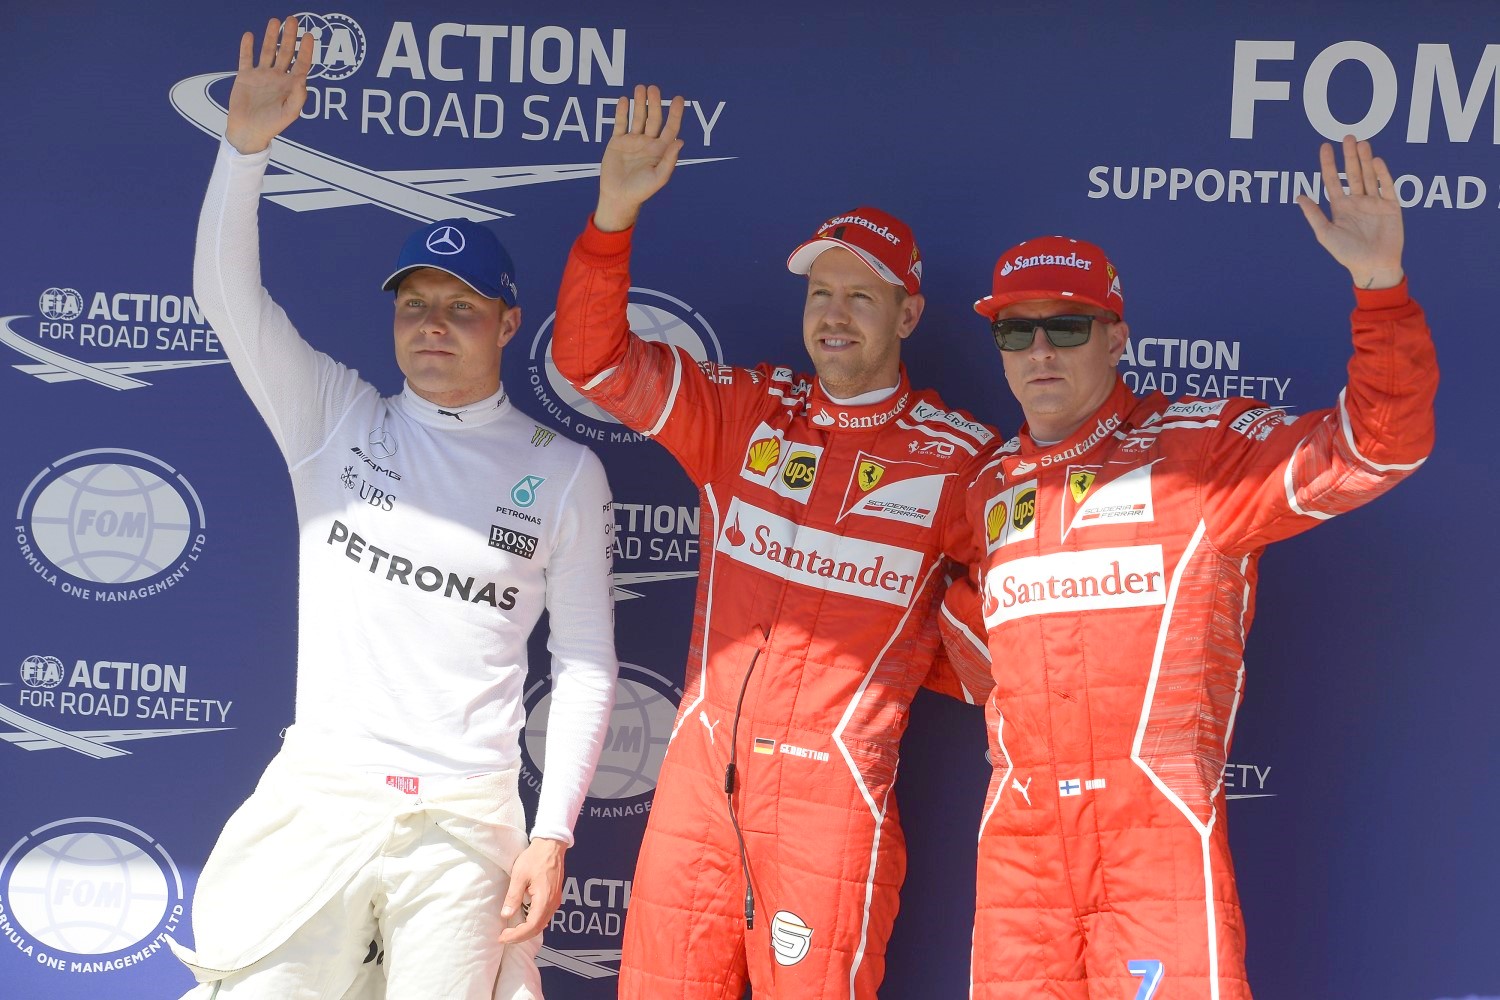 From left, Bottas, Vettel and Raikkonen